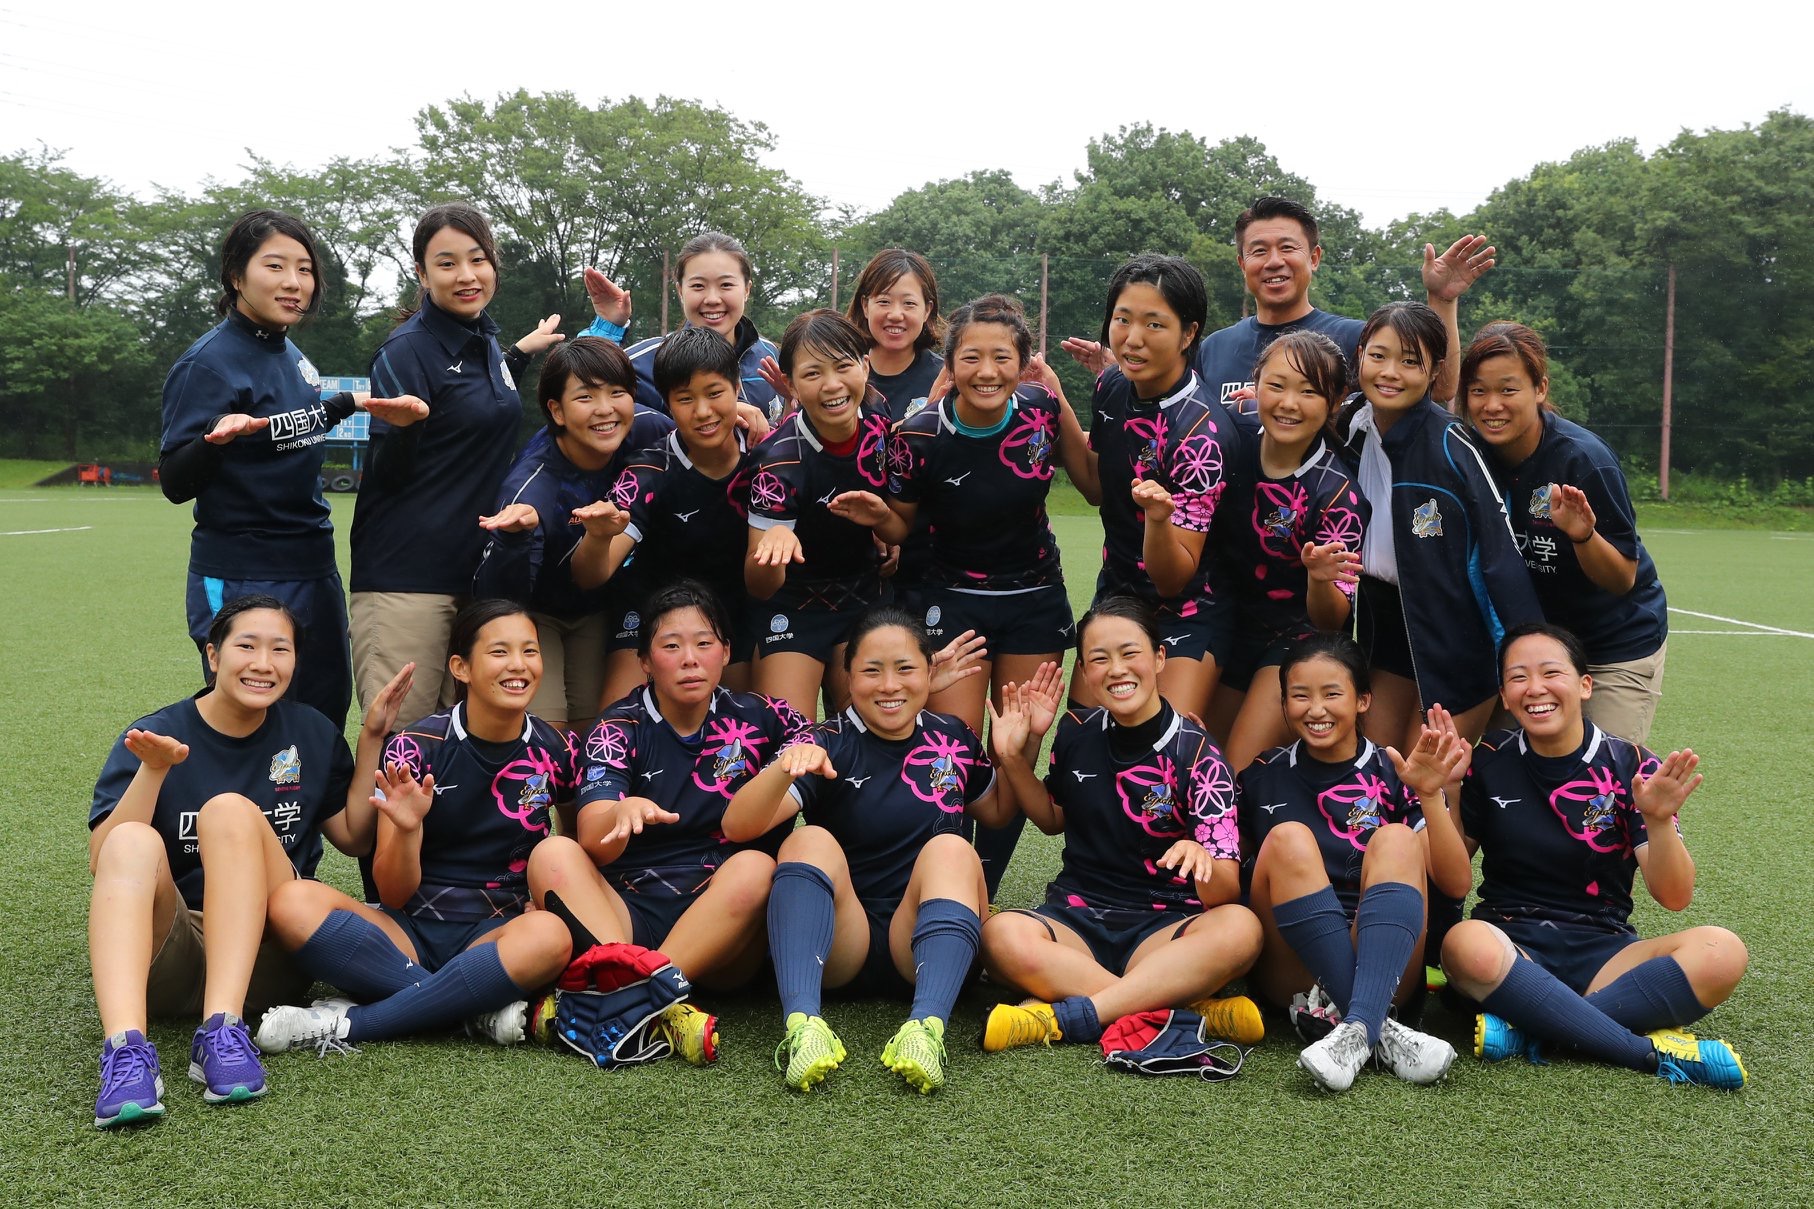 盛り上がる女子ラグビー界の新星四国大学 徳島市 の女子7人制ラグビー部が太陽生命ウィメンズセブンズ コアチームに昇格 Newscast